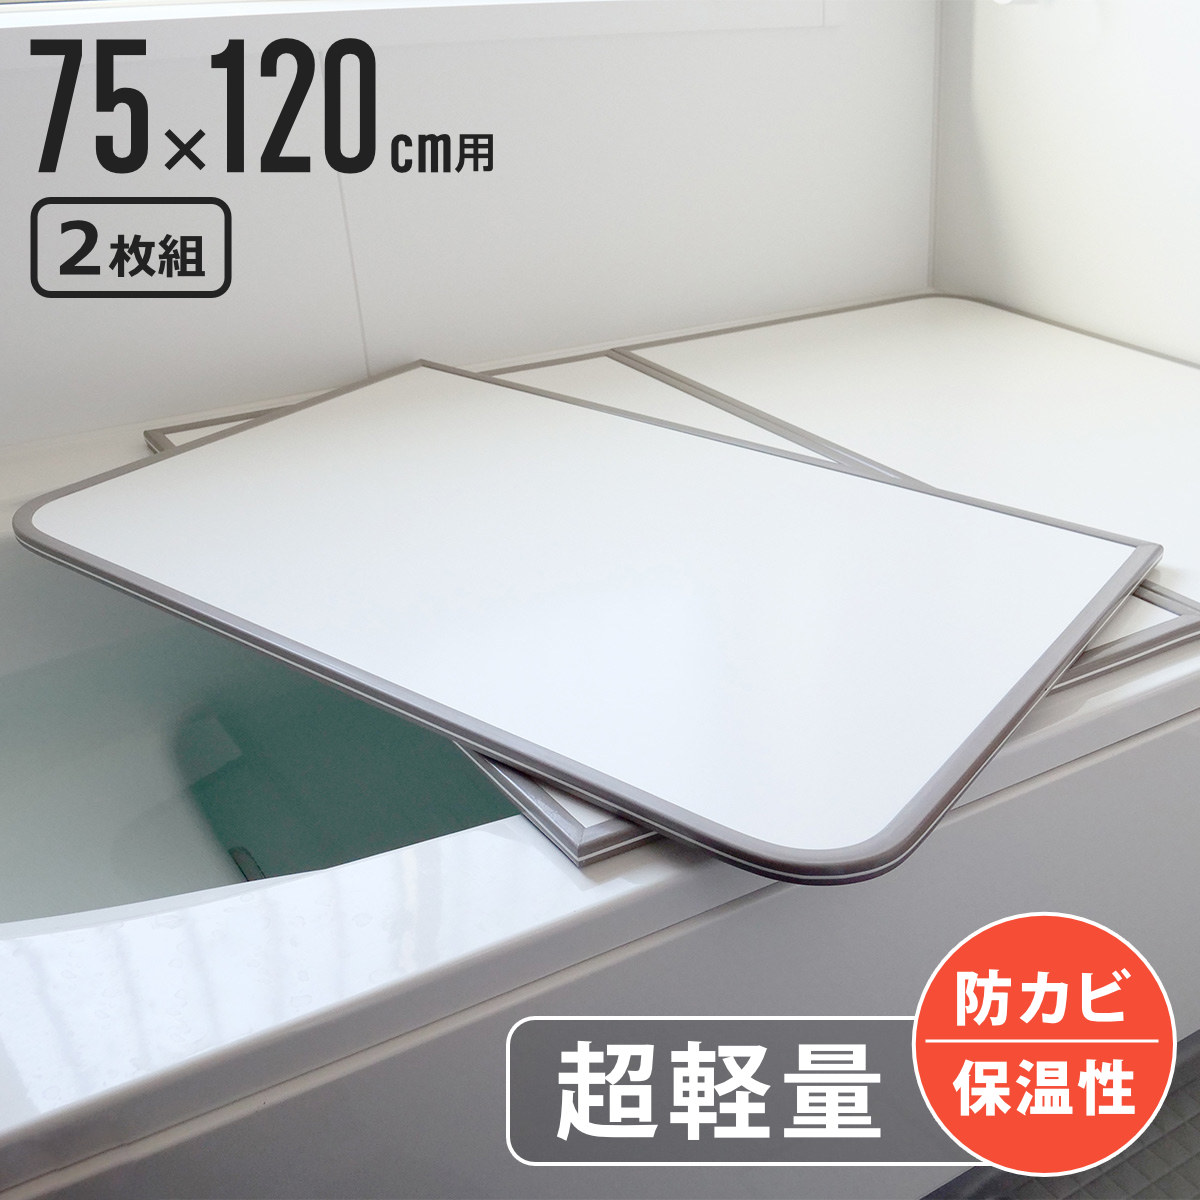  風呂ふた 組み合わせ 軽量 カビの生えにくい風呂ふた L-12 75×120cm 実寸73×118cm 2枚組